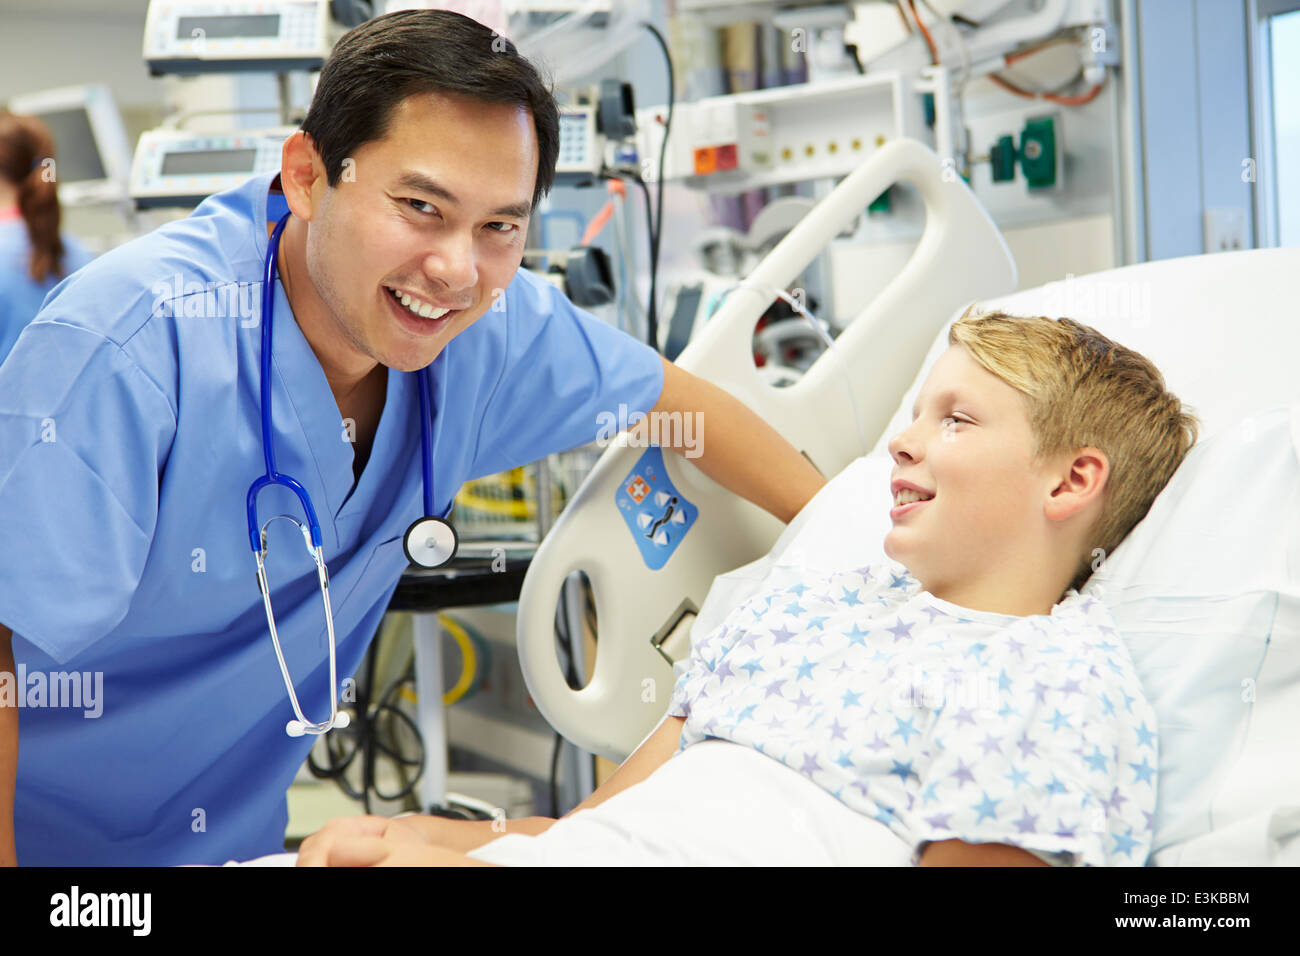 Boy Talking To Male Nurse In Emergency Room Stock Photo Alamy